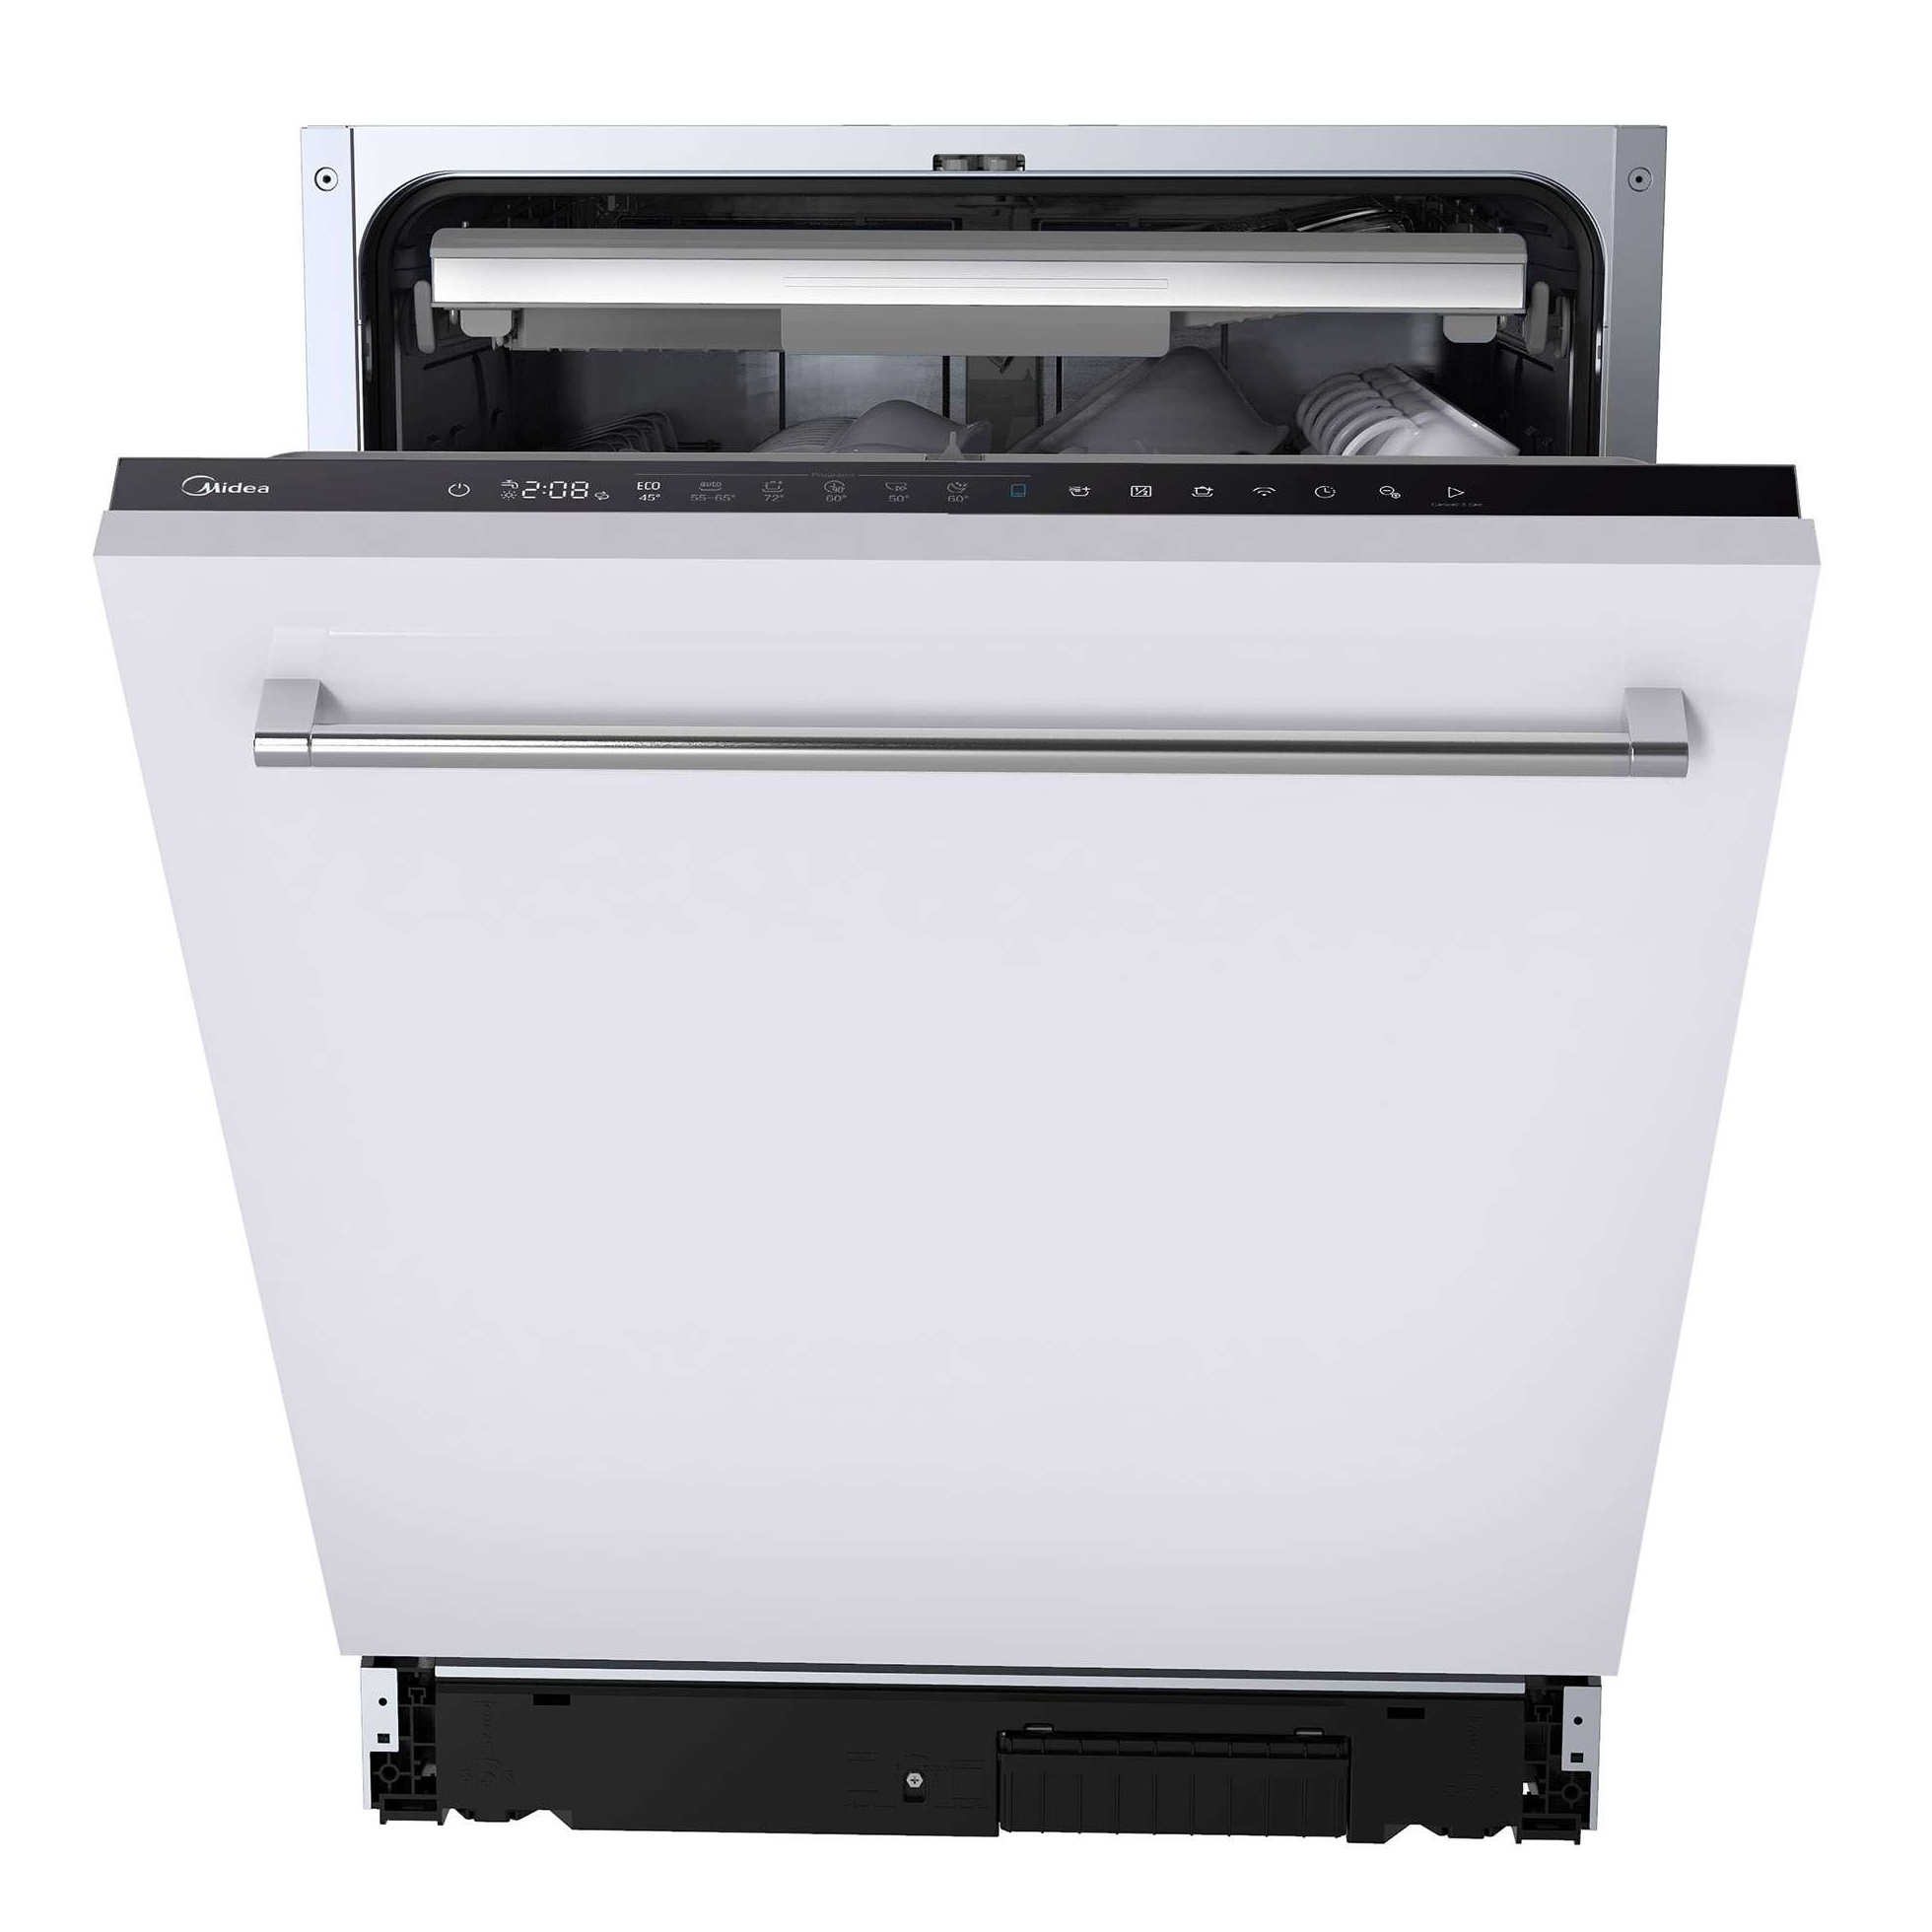 Встраиваемая посудомоечная машина Midea MID60S360i встраиваемая посудомоечная машина midea mid45s130i 45см 5 программ серебристый